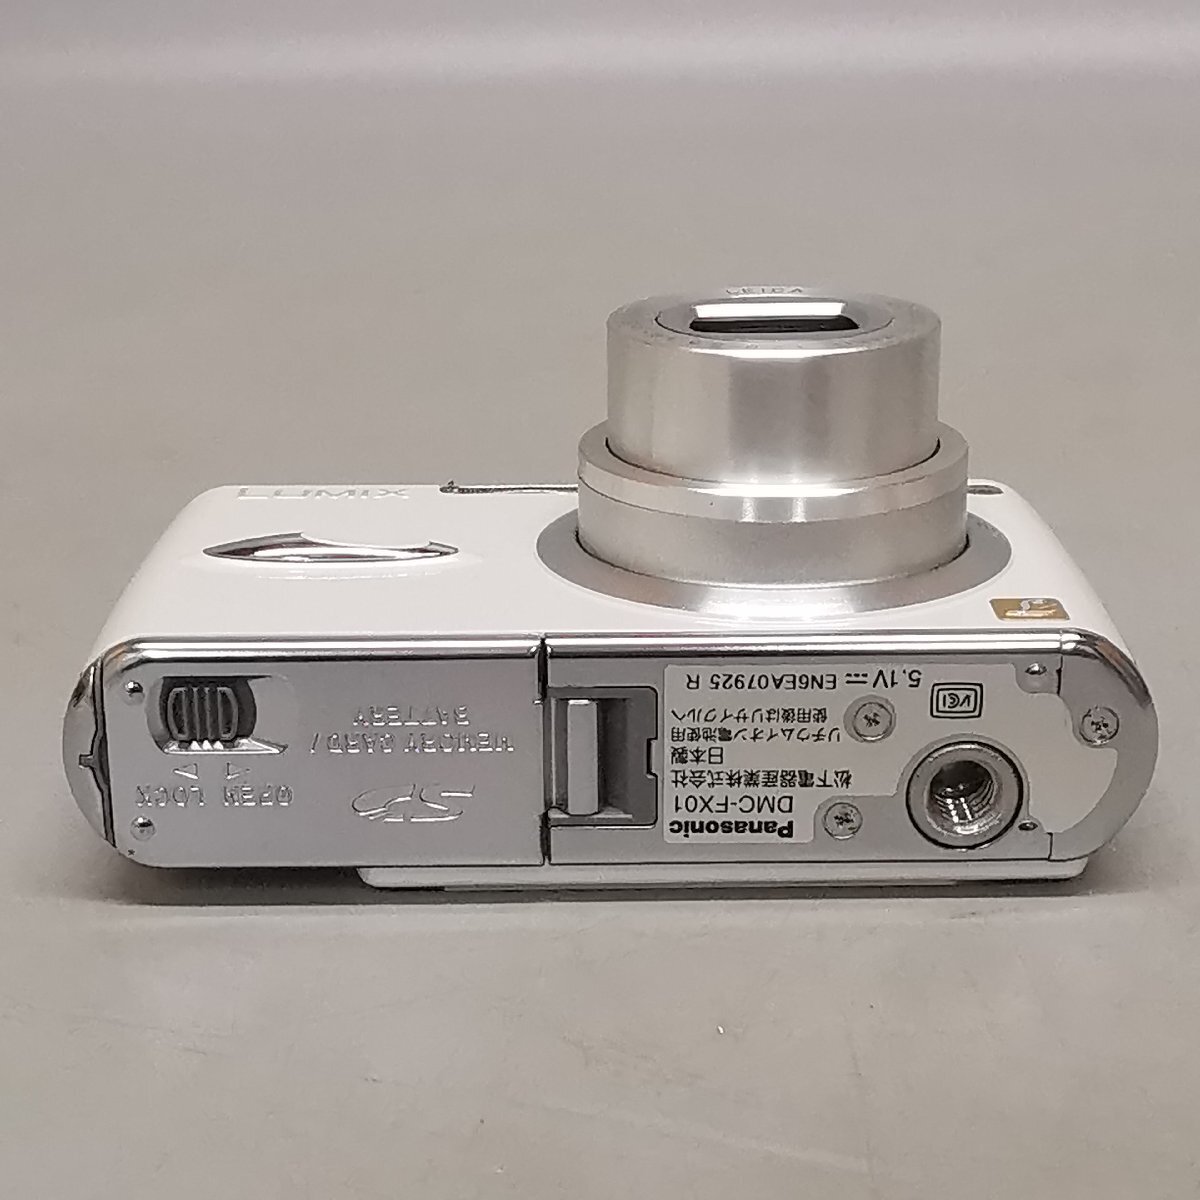 動作品 Panasonic LUMIX DMC-FX01 パナソニック ルミックス コンパクトデジタルカメラ 元箱 充電器 他付属品 Z5498